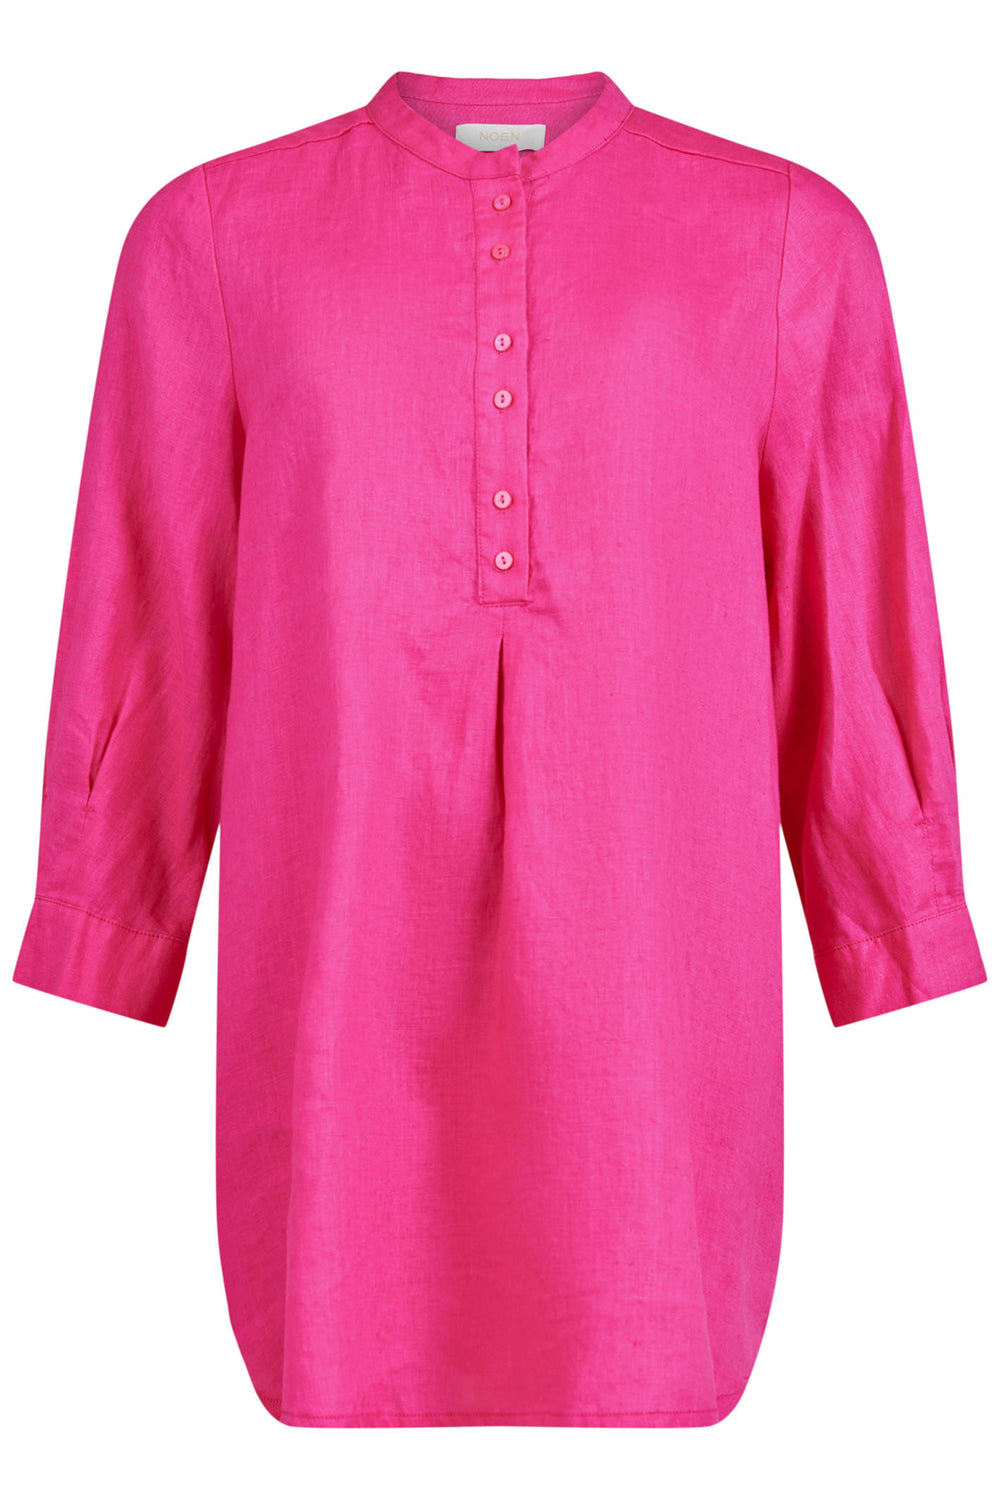 Noen 141-83461 Raspberry Pink Collarless Linen Tunic Top - Dotique